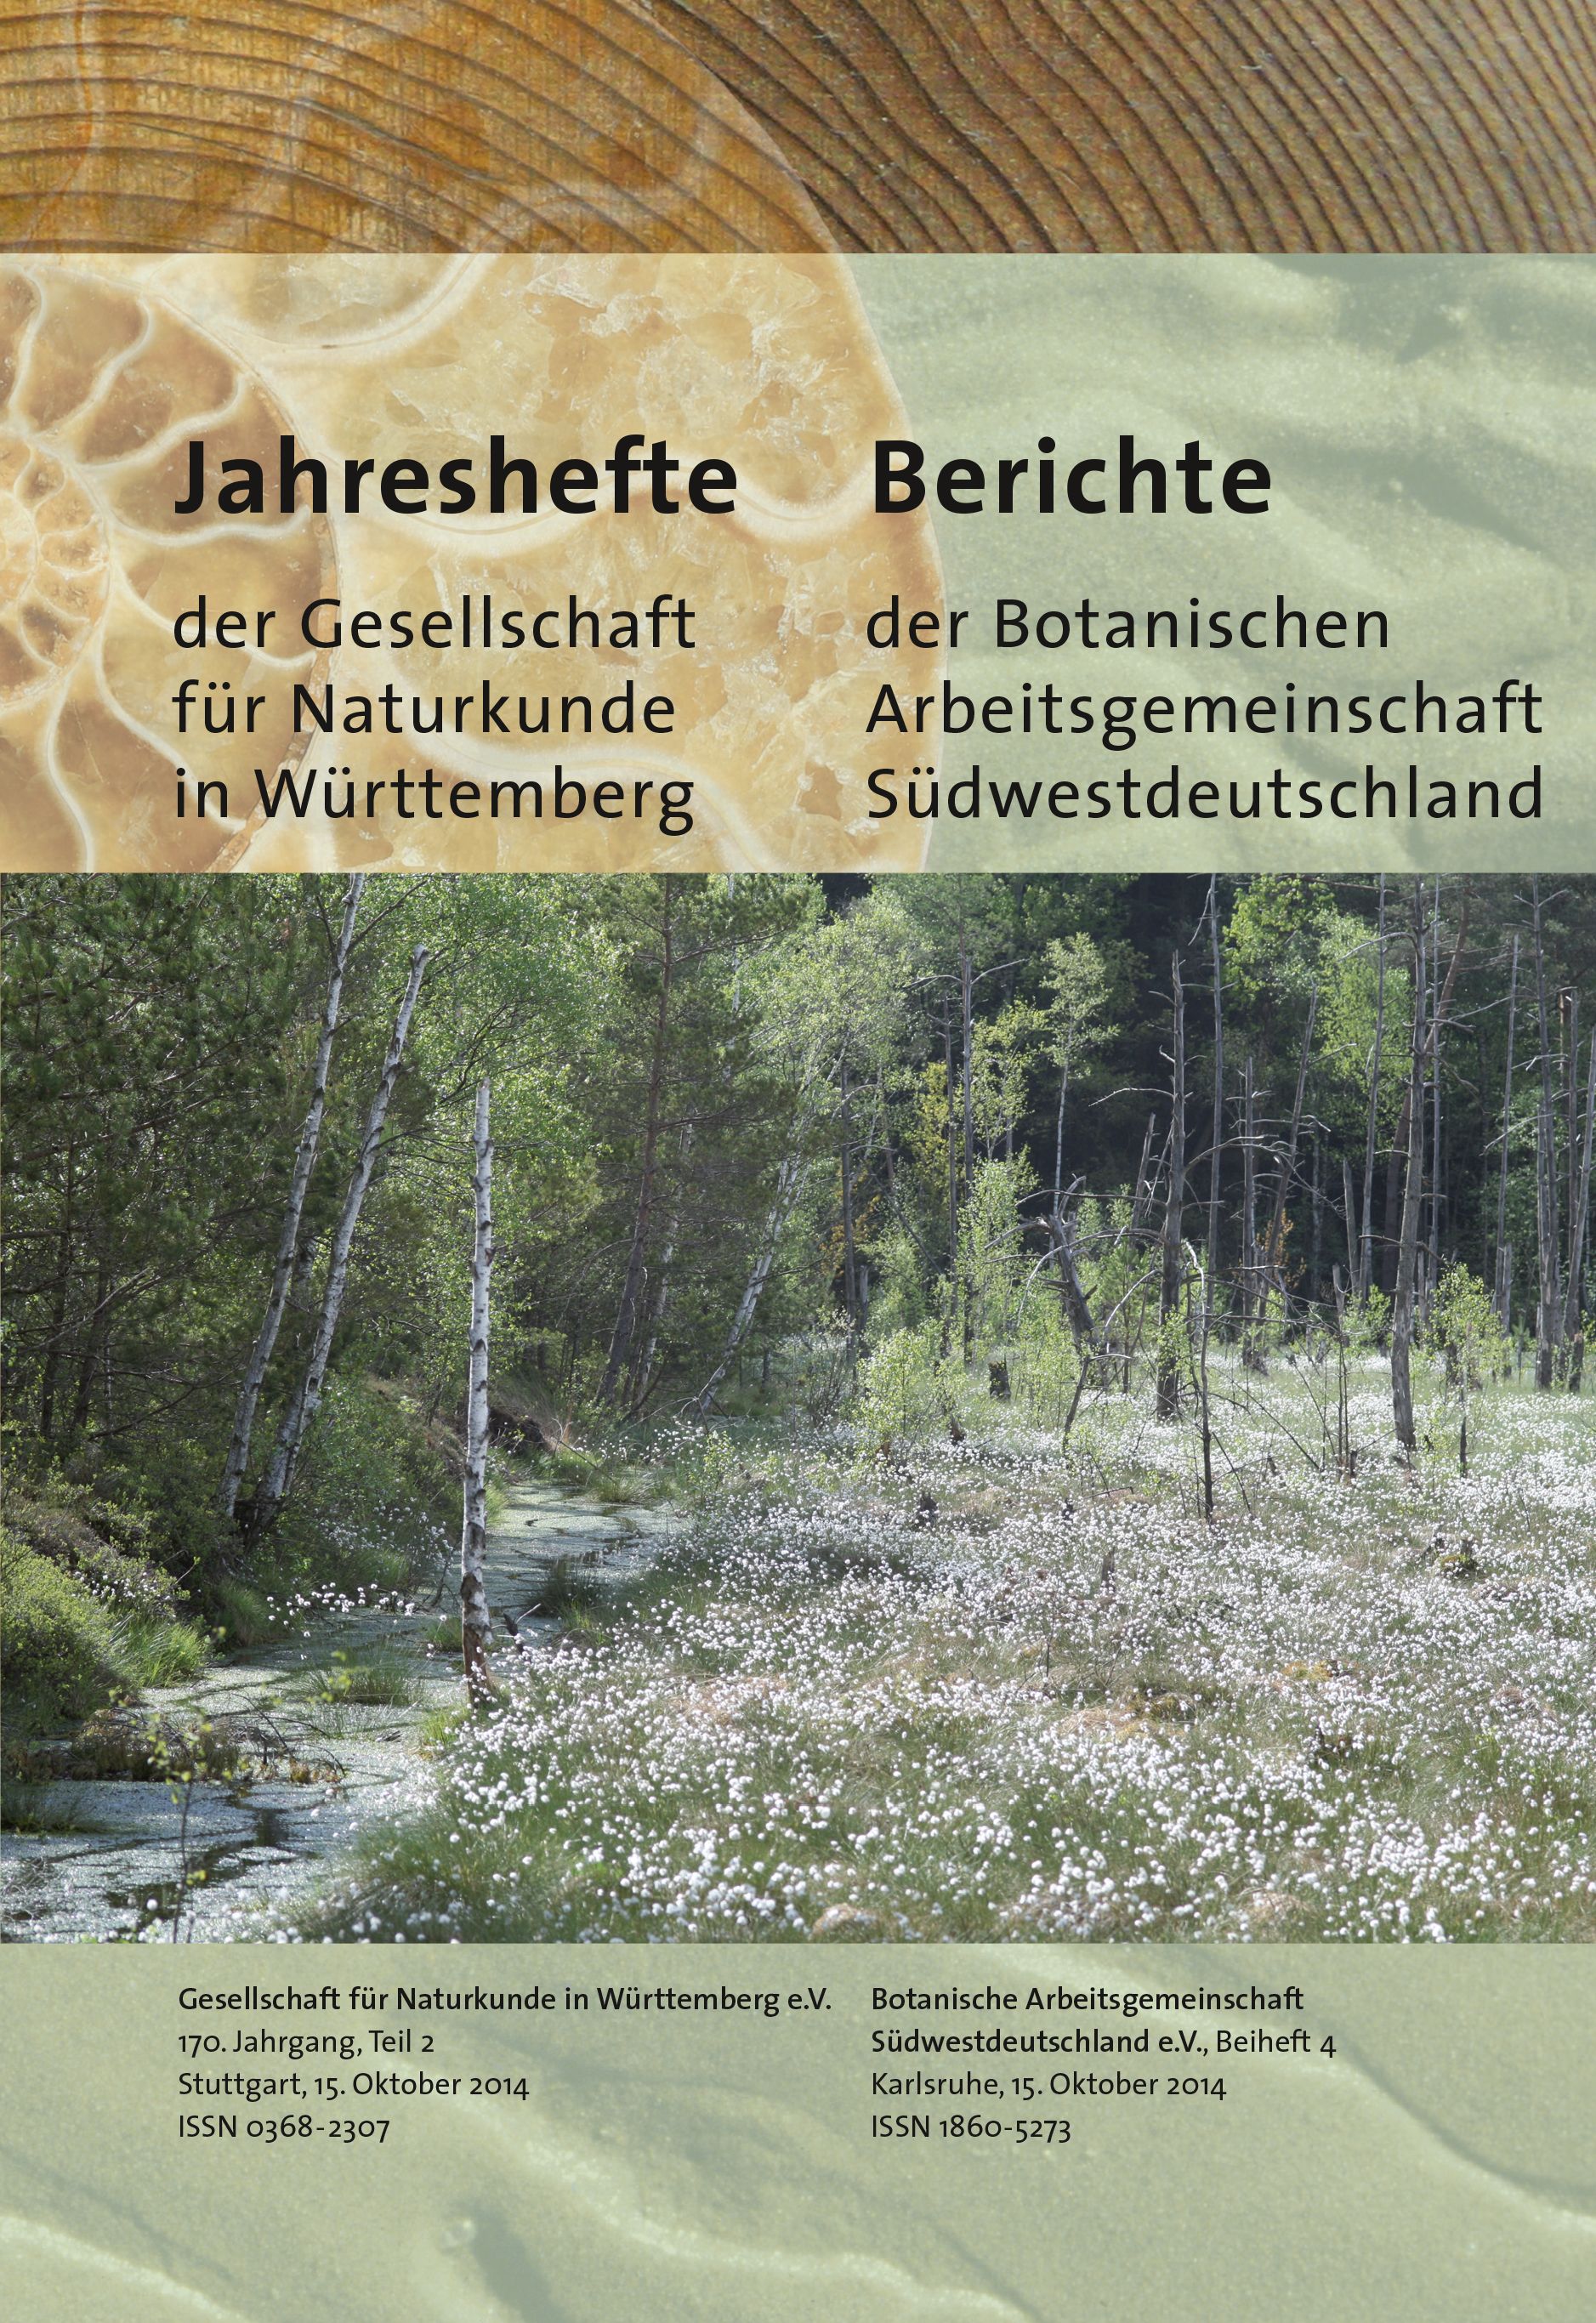 					Ansehen Bd. 170 Nr. 2 (2014): Jahreshefte der Gesellschaft für Naturkunde in Württemberg, 170. Jahrgang, Heft 2
				